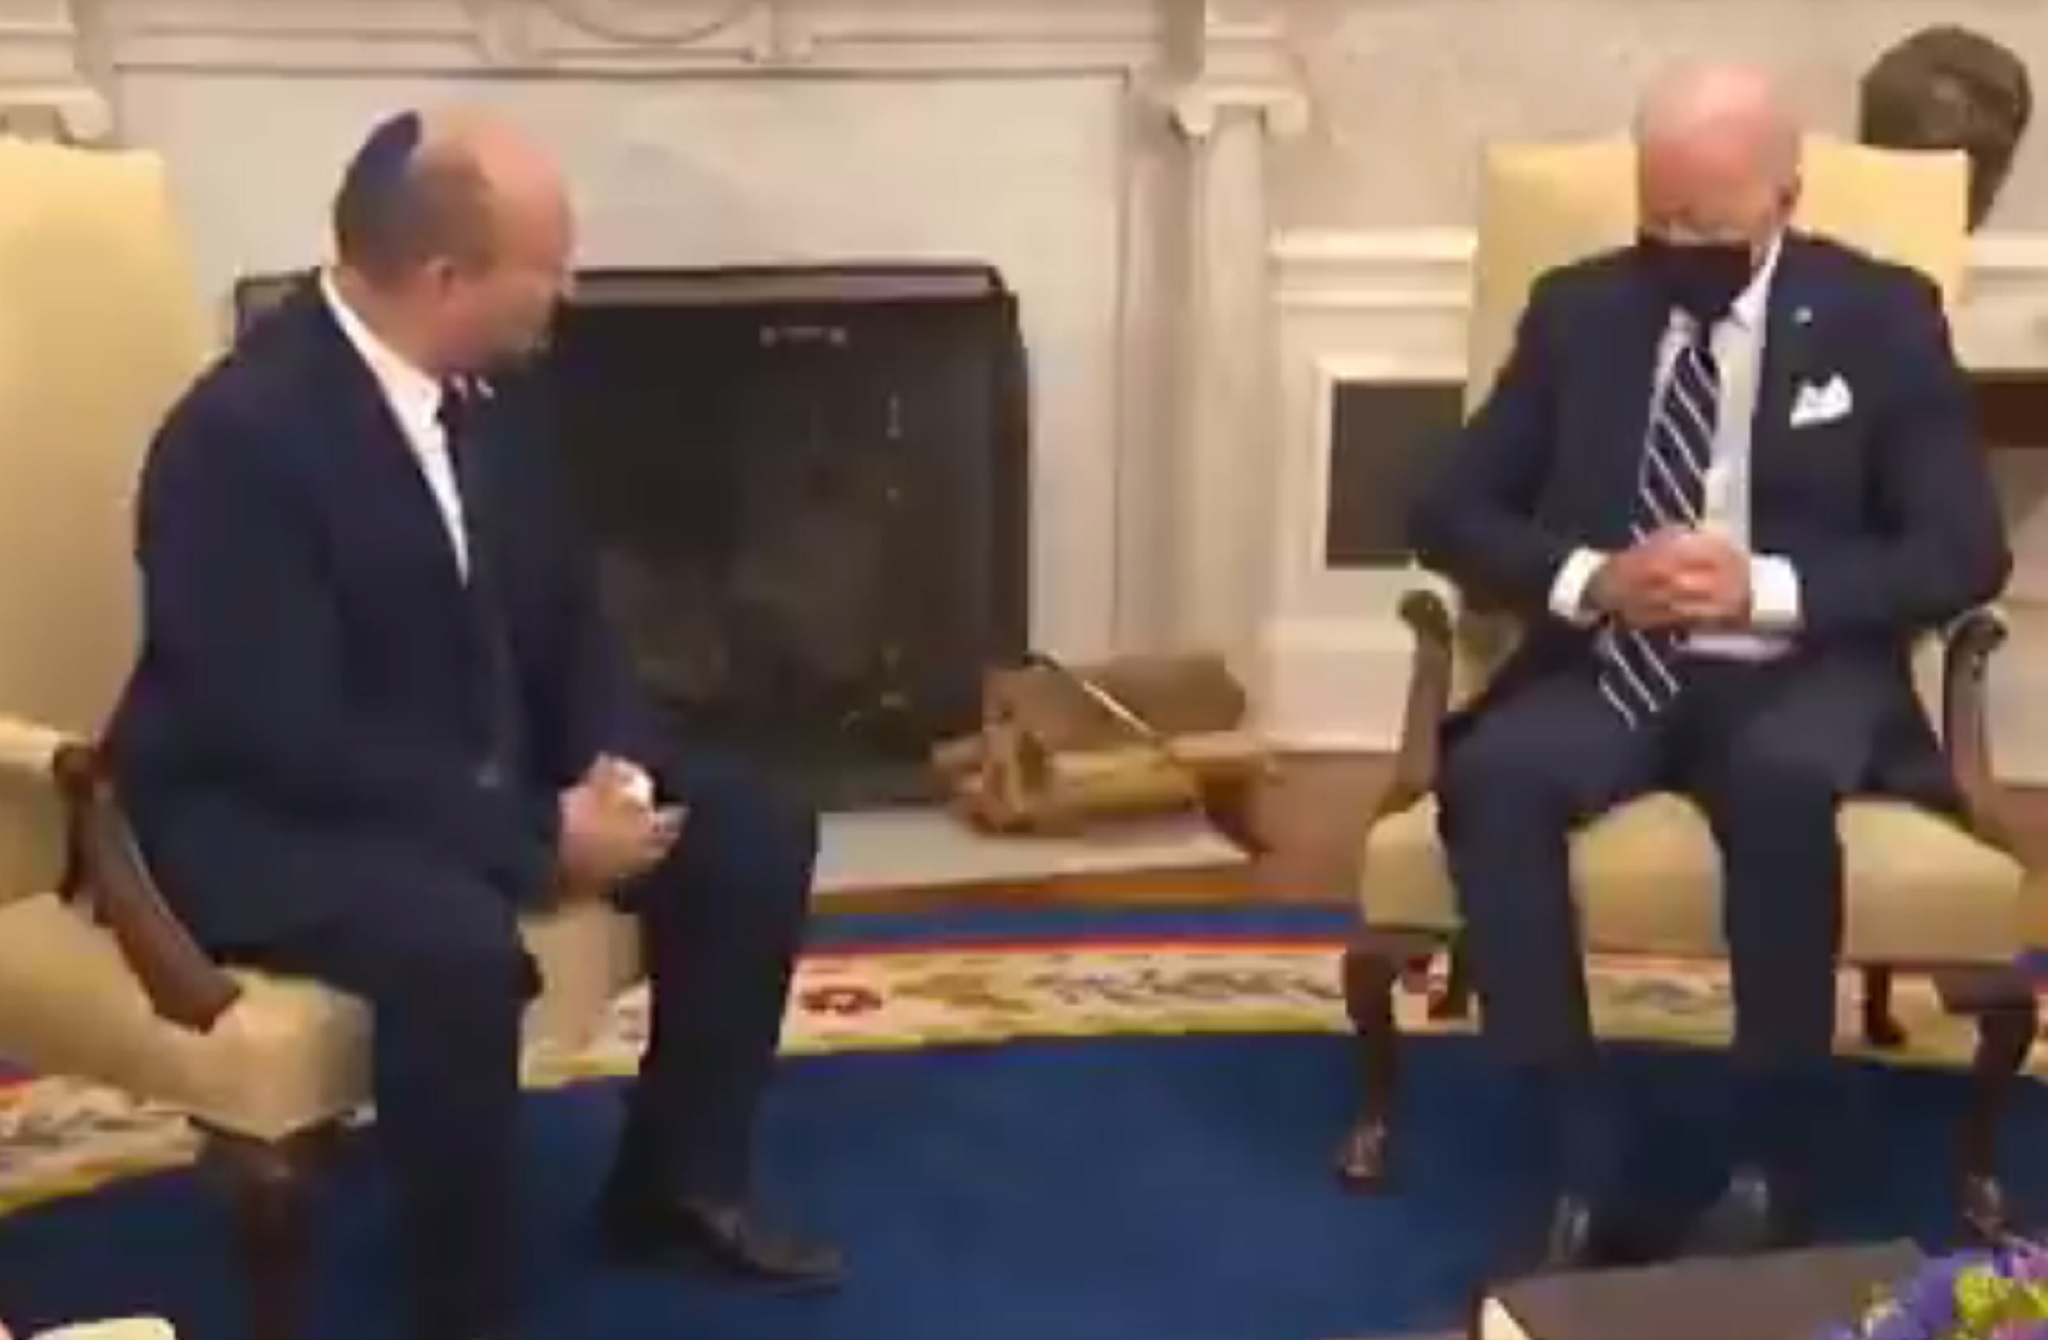 ΗΠΑ: Ο Τζο Μπάιντεν κοιμήθηκε στη συνάντηση με τον πρωθυπουργό του Ισραήλ